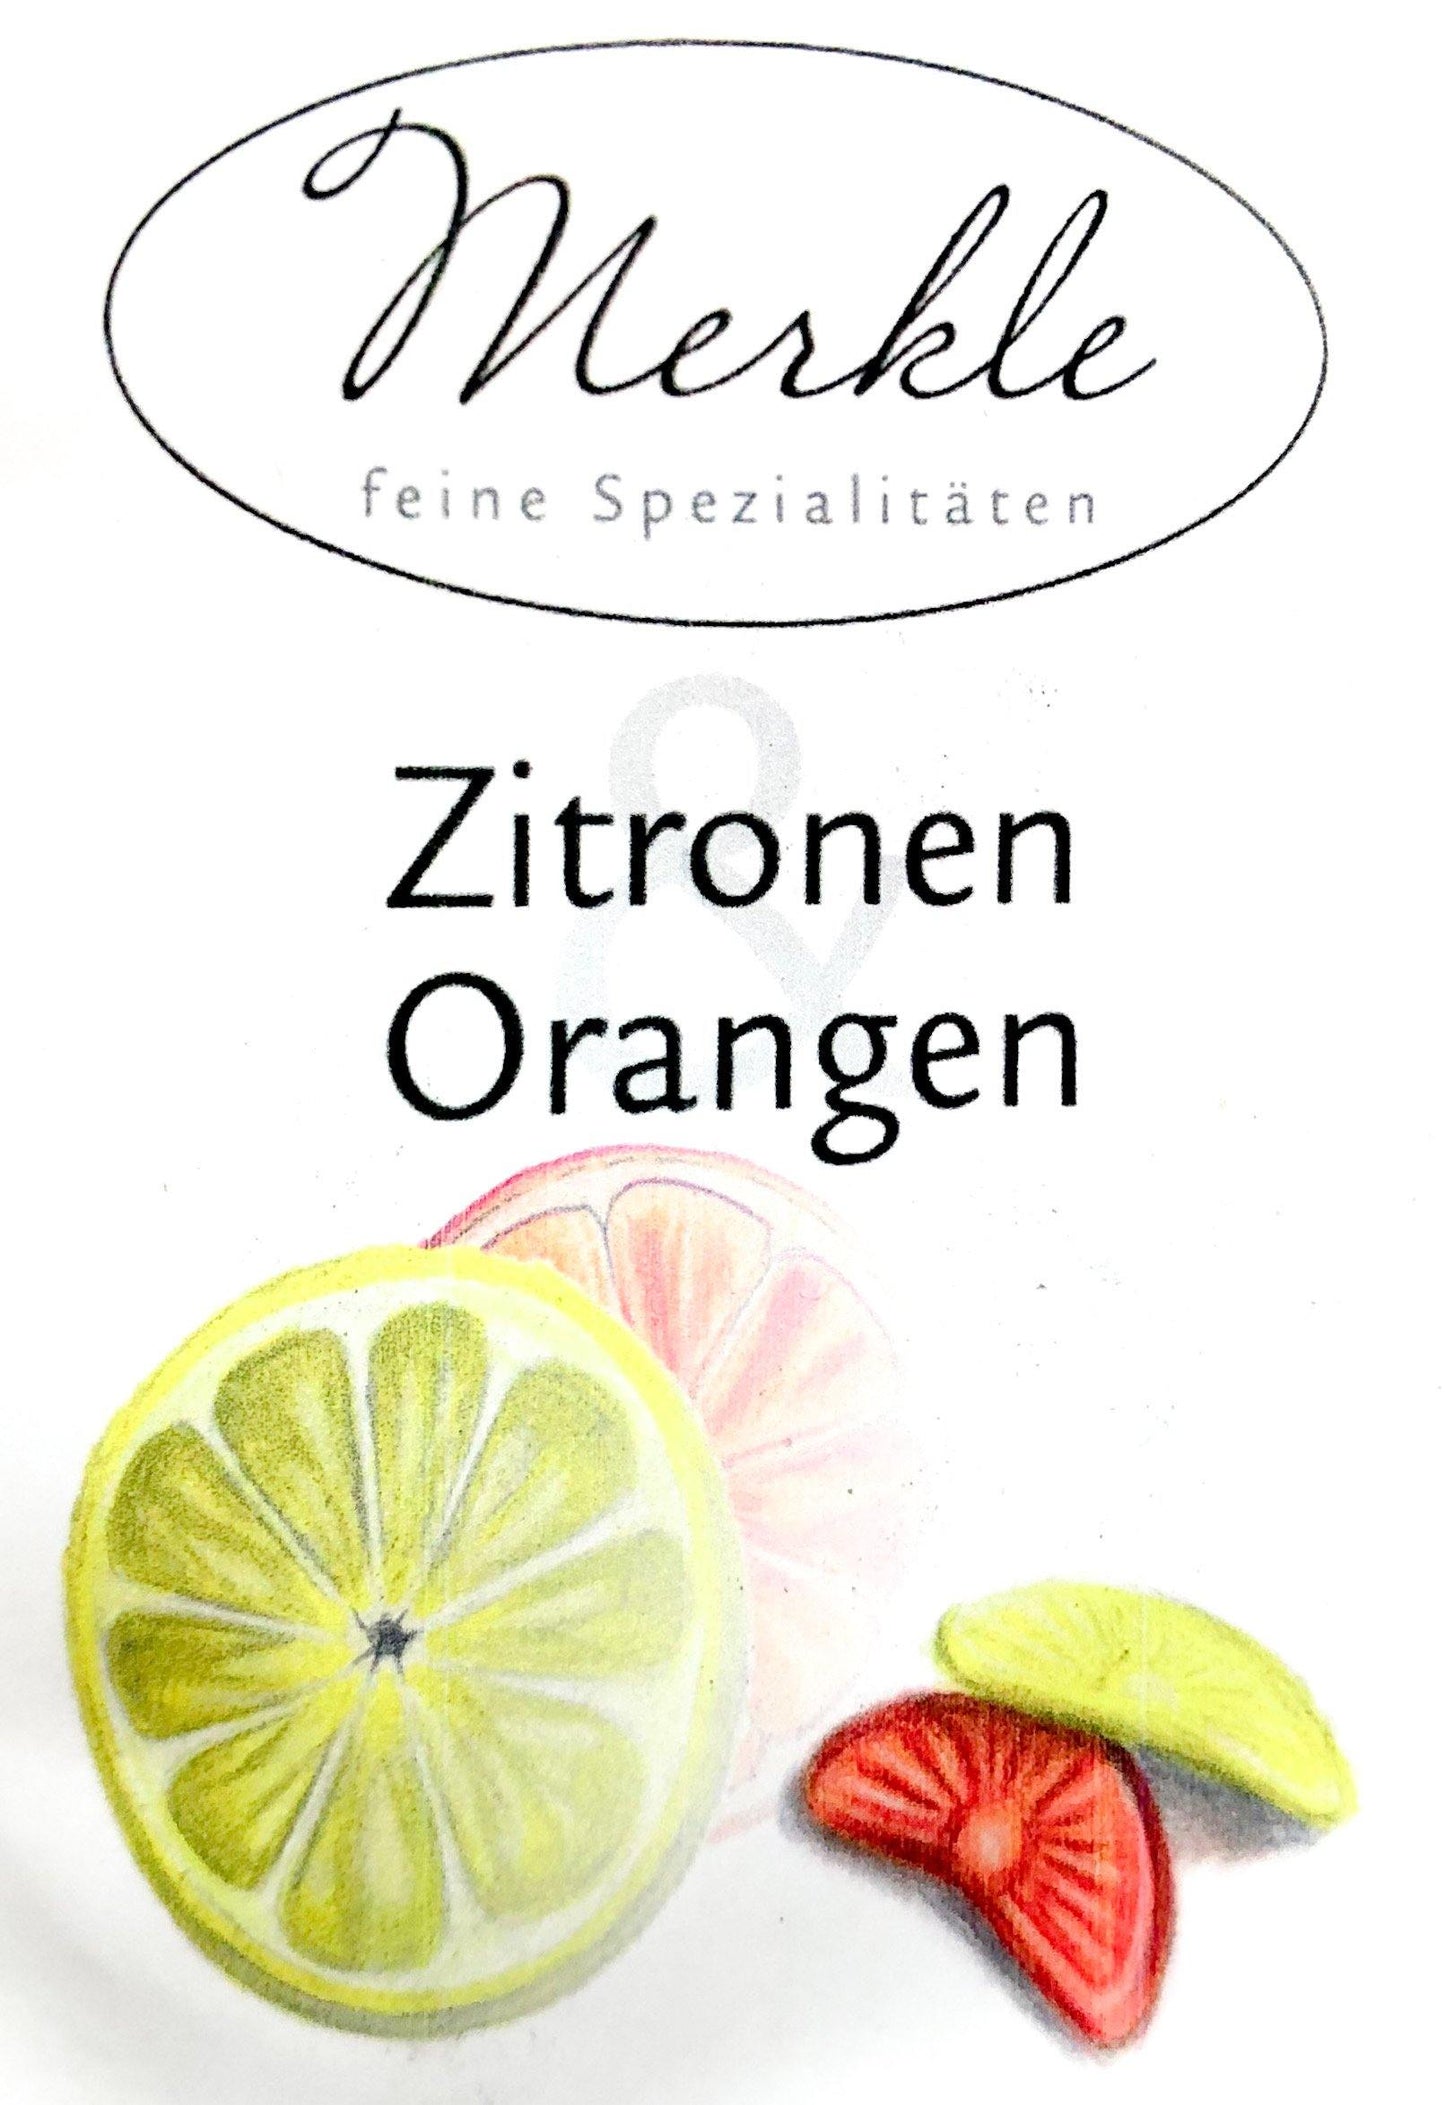 Zitronen / Orangen Bonbons